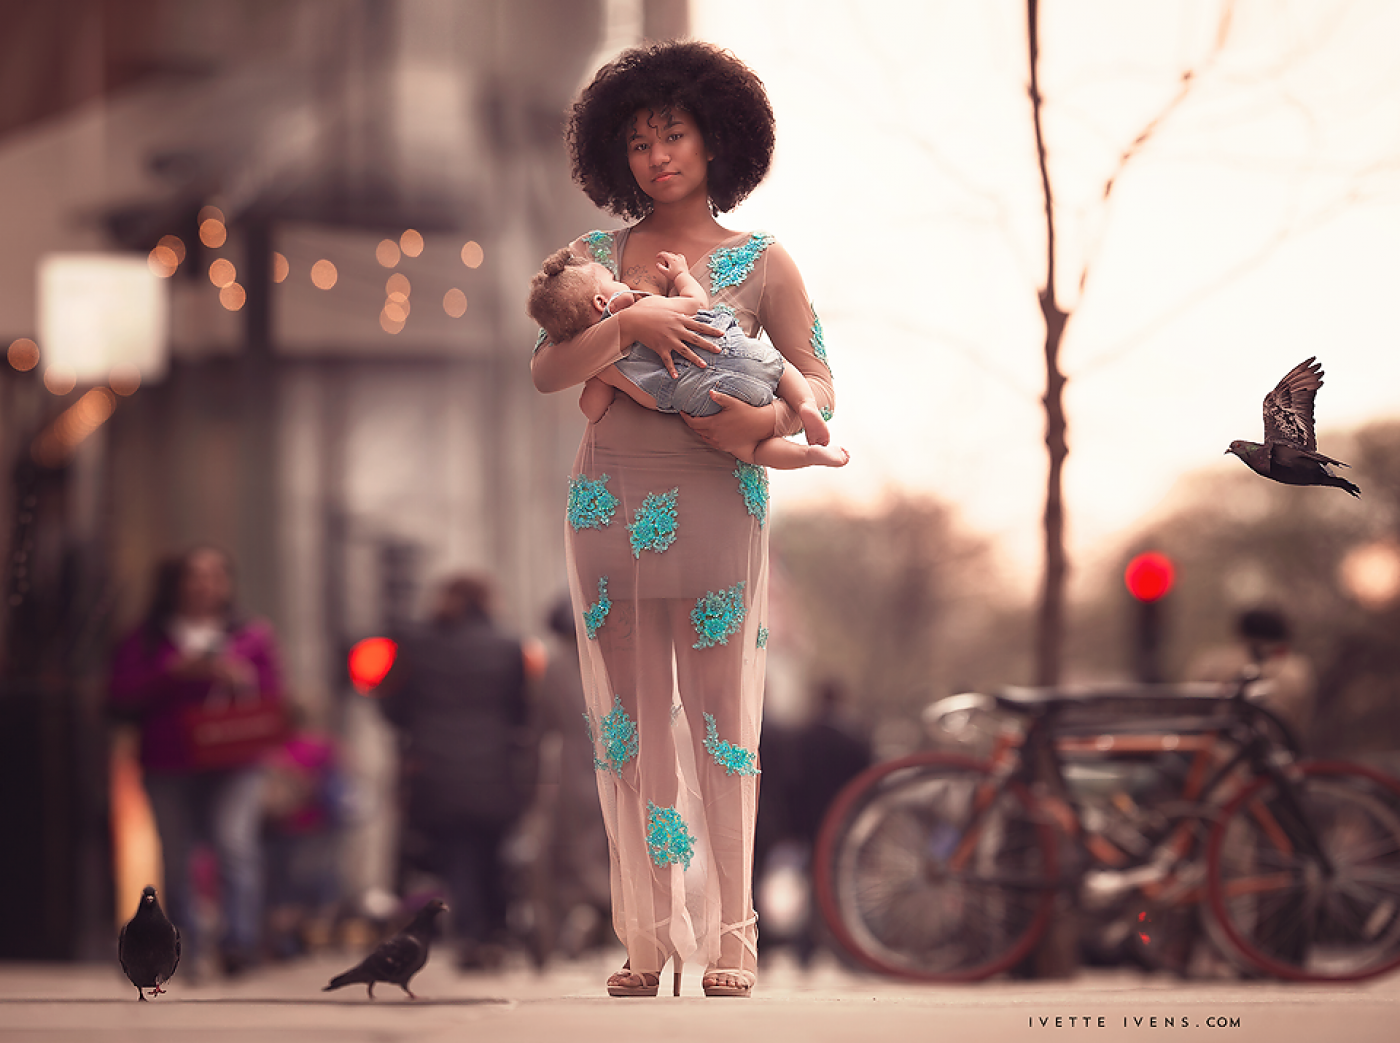 Арт-проект «Кормящие богини»: молодые мамы в объективе американского фотографа